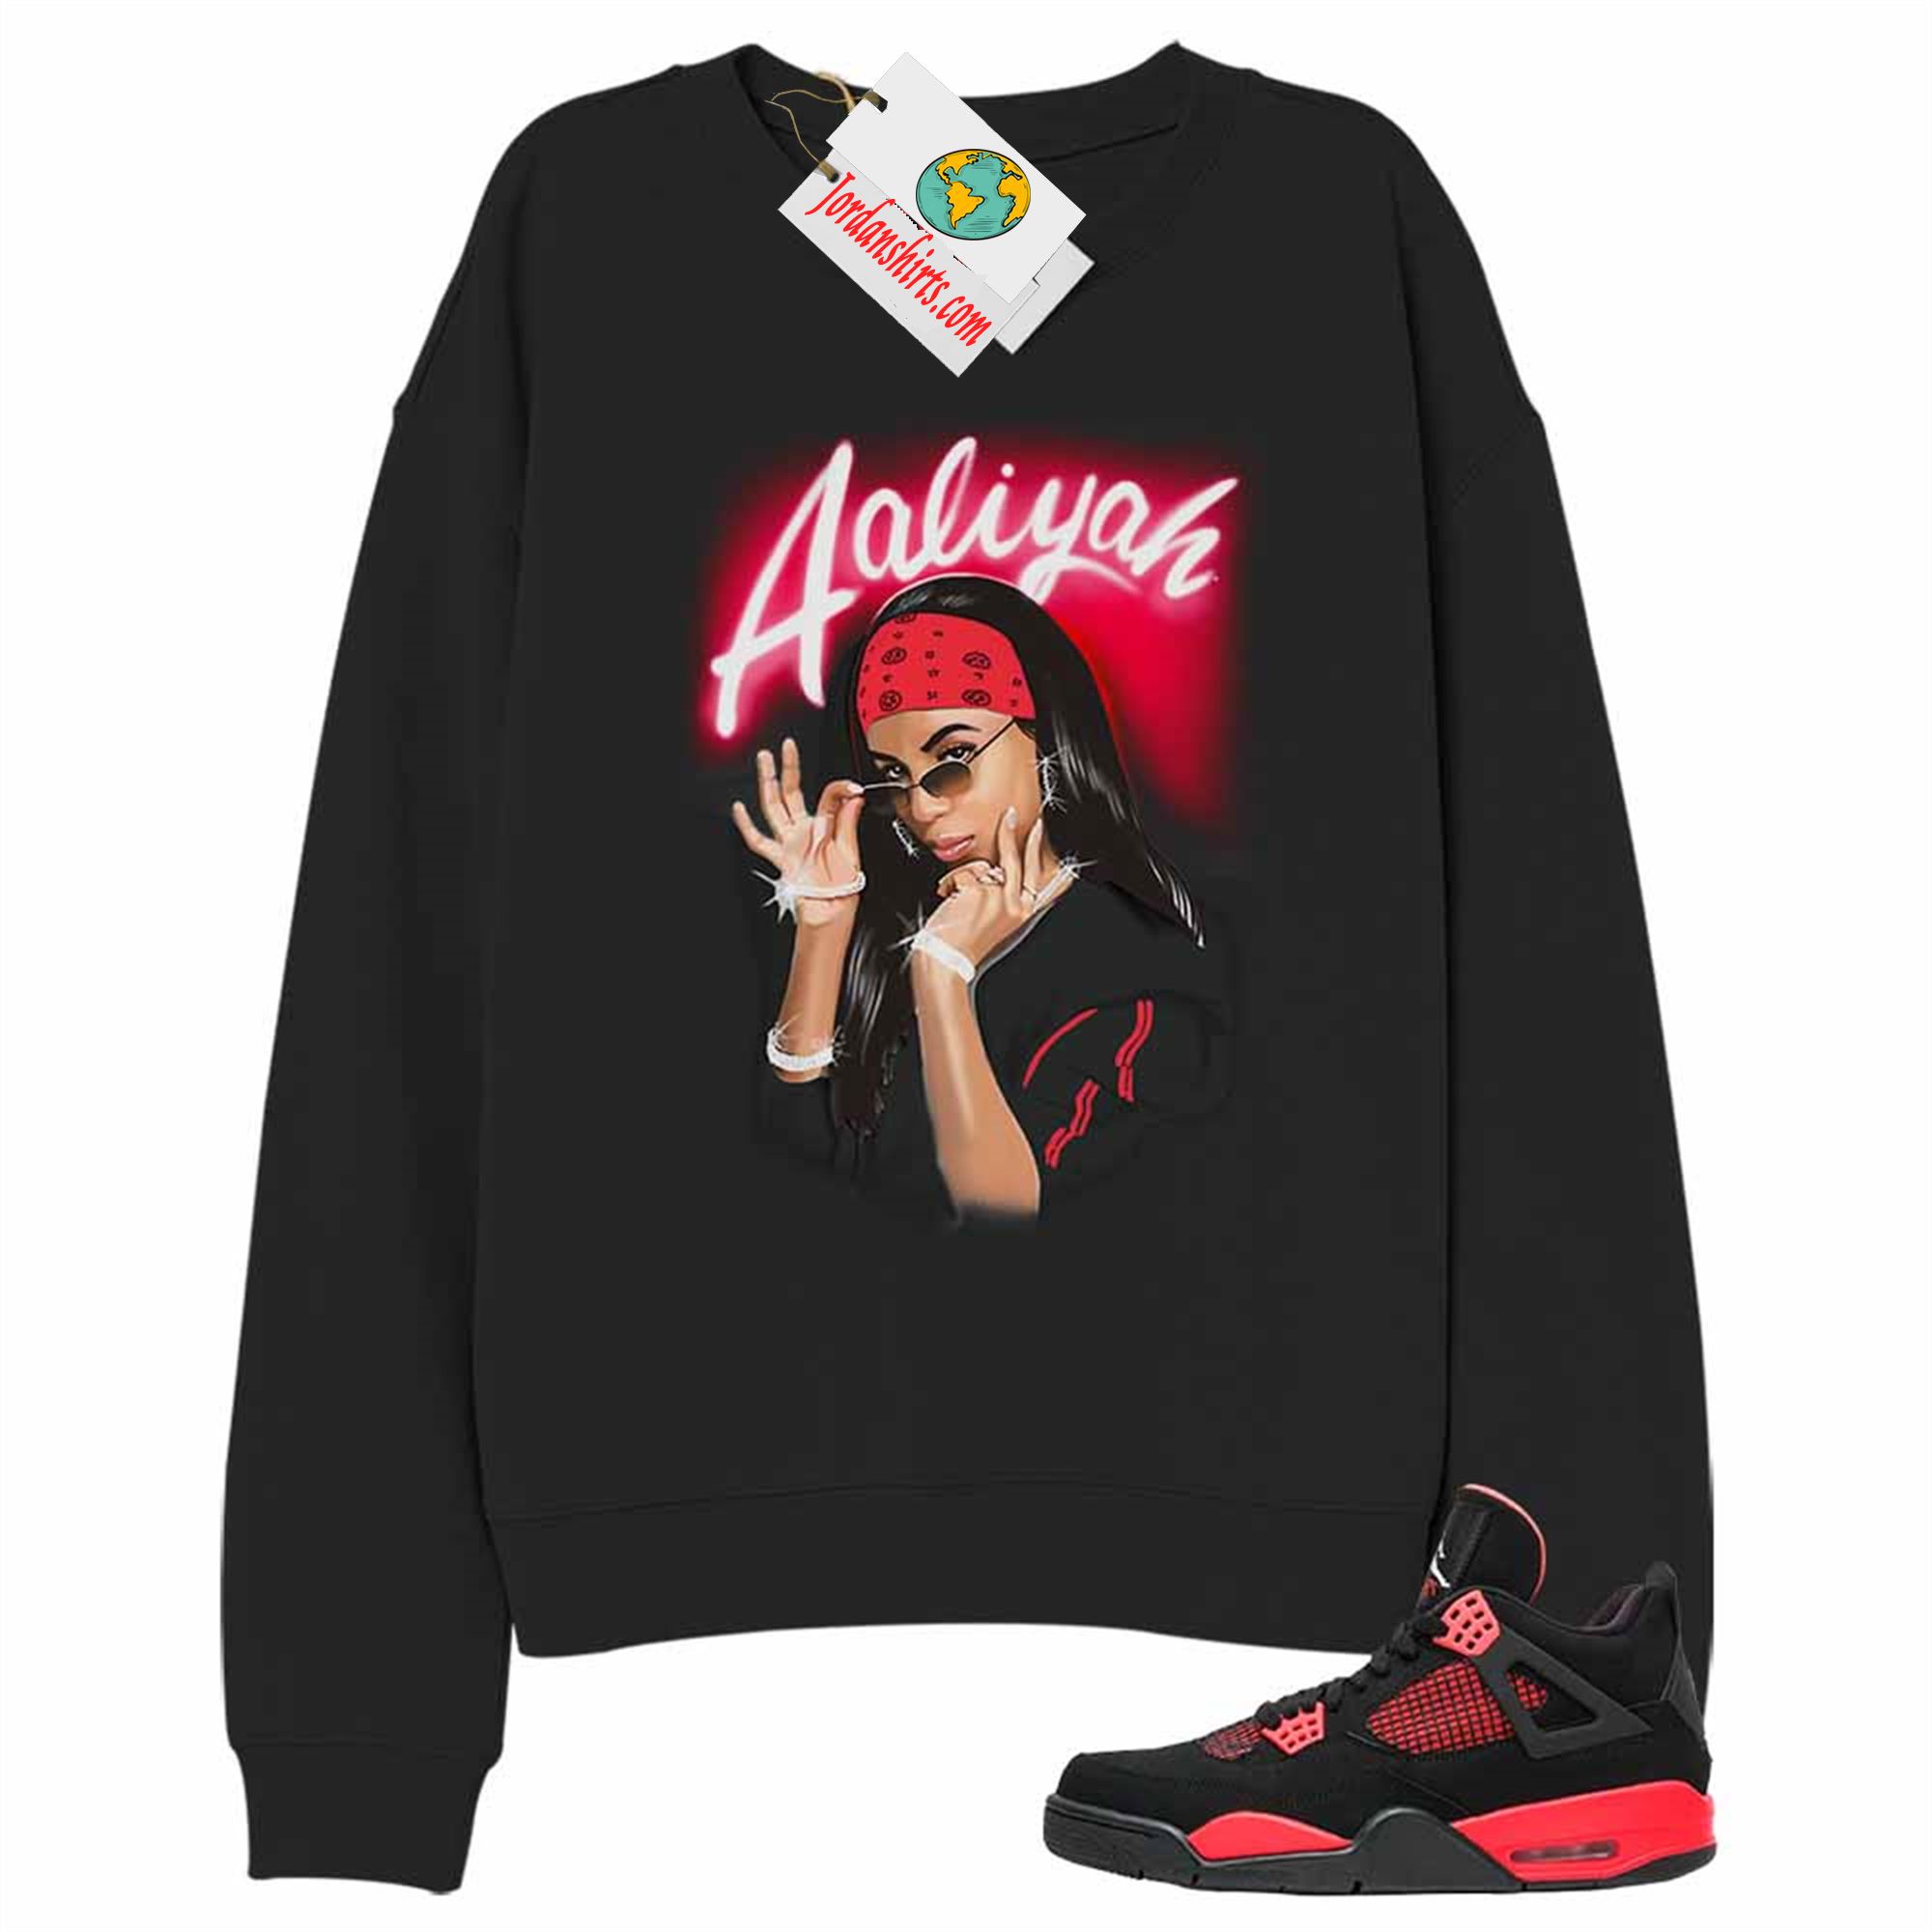 Jordan 4 Sweatshirt, Aaliyah Airbrush Black Sweatshirt Air Jordan 4 Red Thunder 4s Full Size Up To 5xl